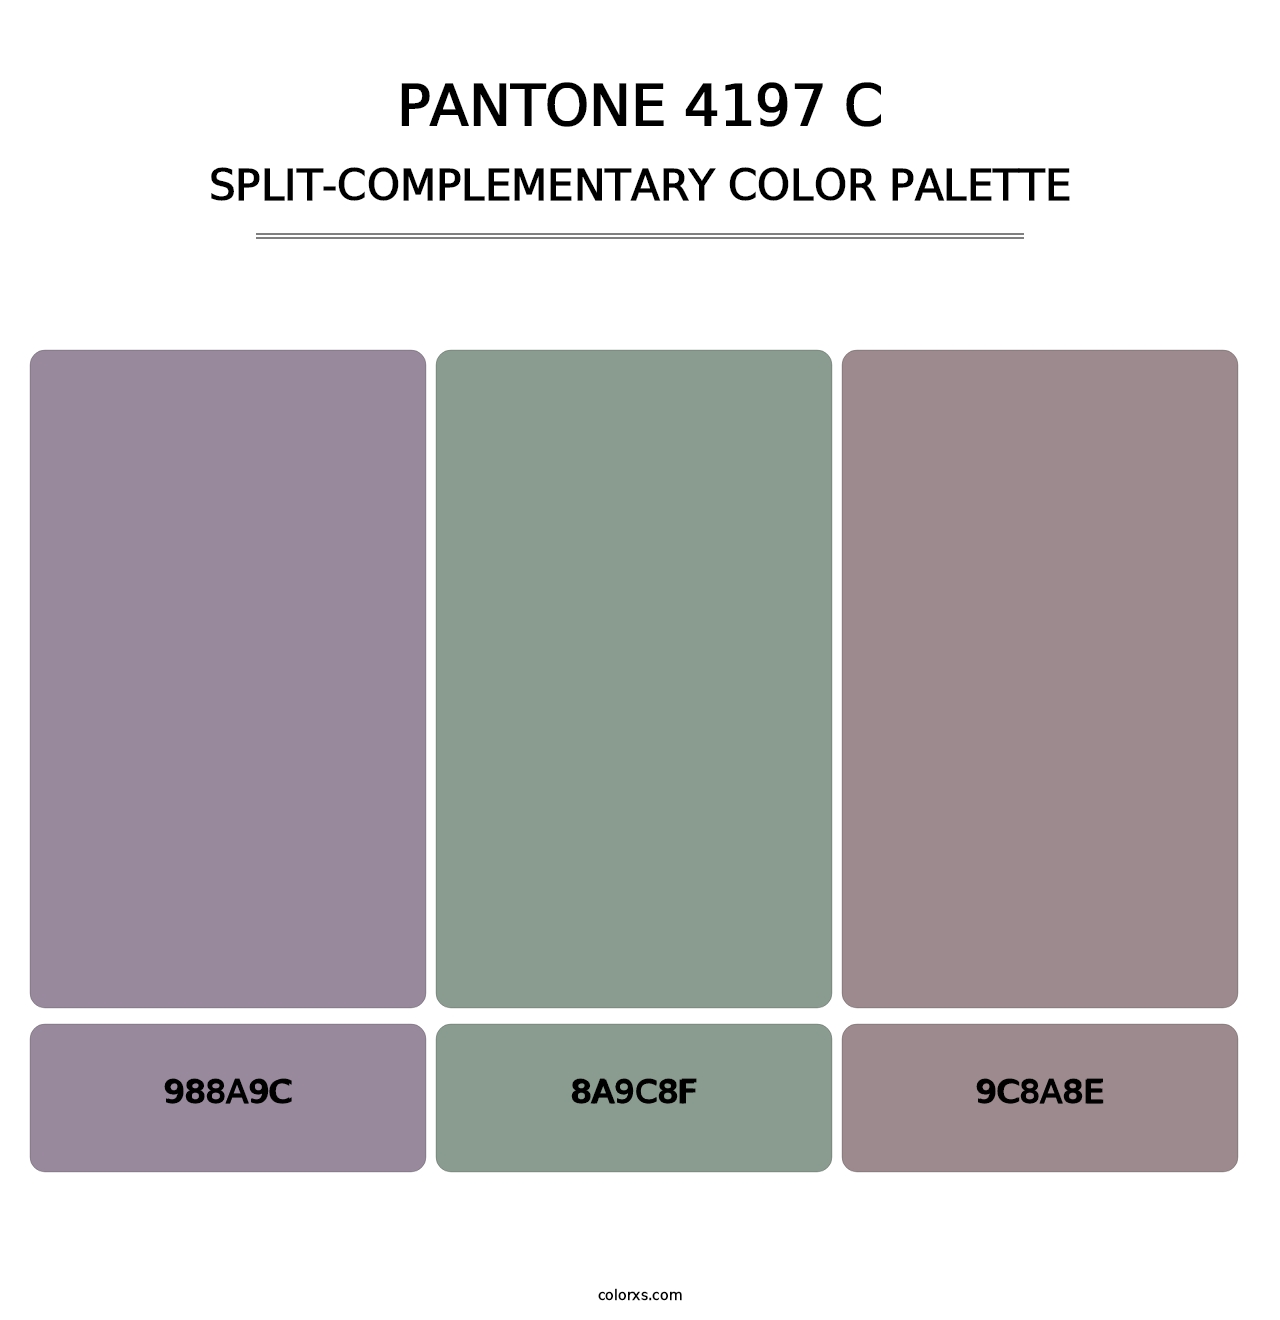 PANTONE 4197 C - Split-Complementary Color Palette